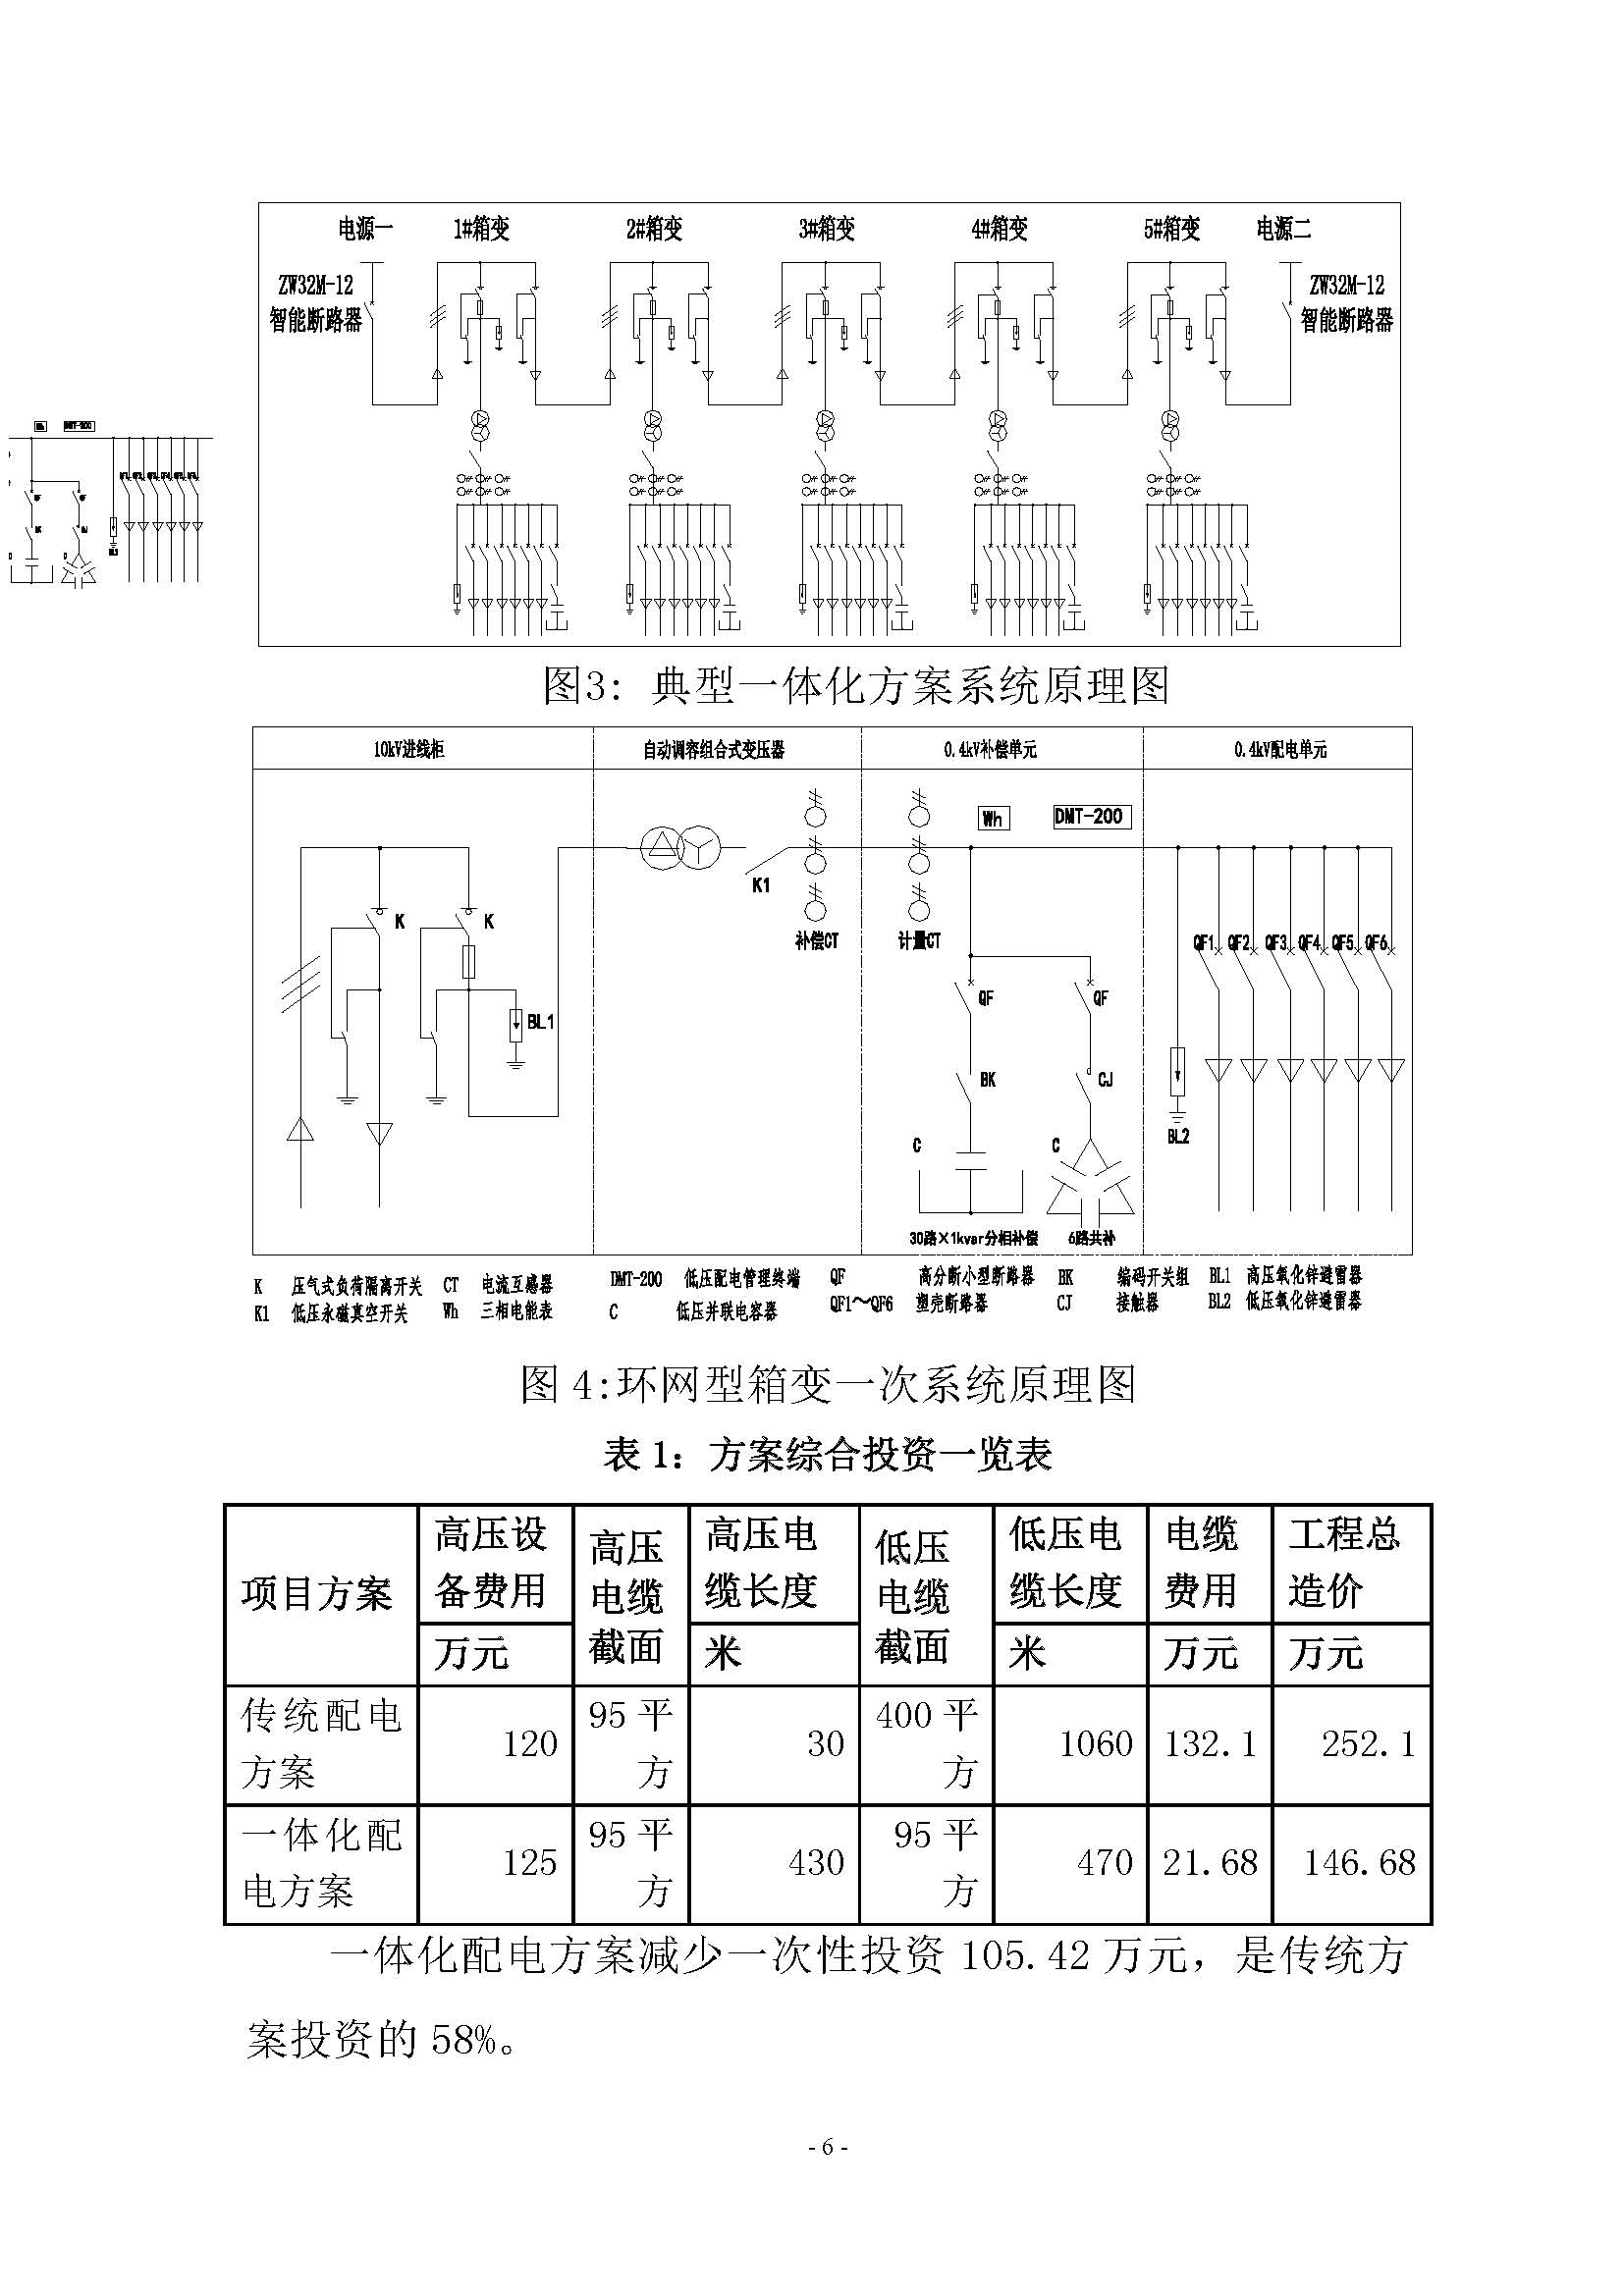 住宅小区配电一体化方案简介(图7)